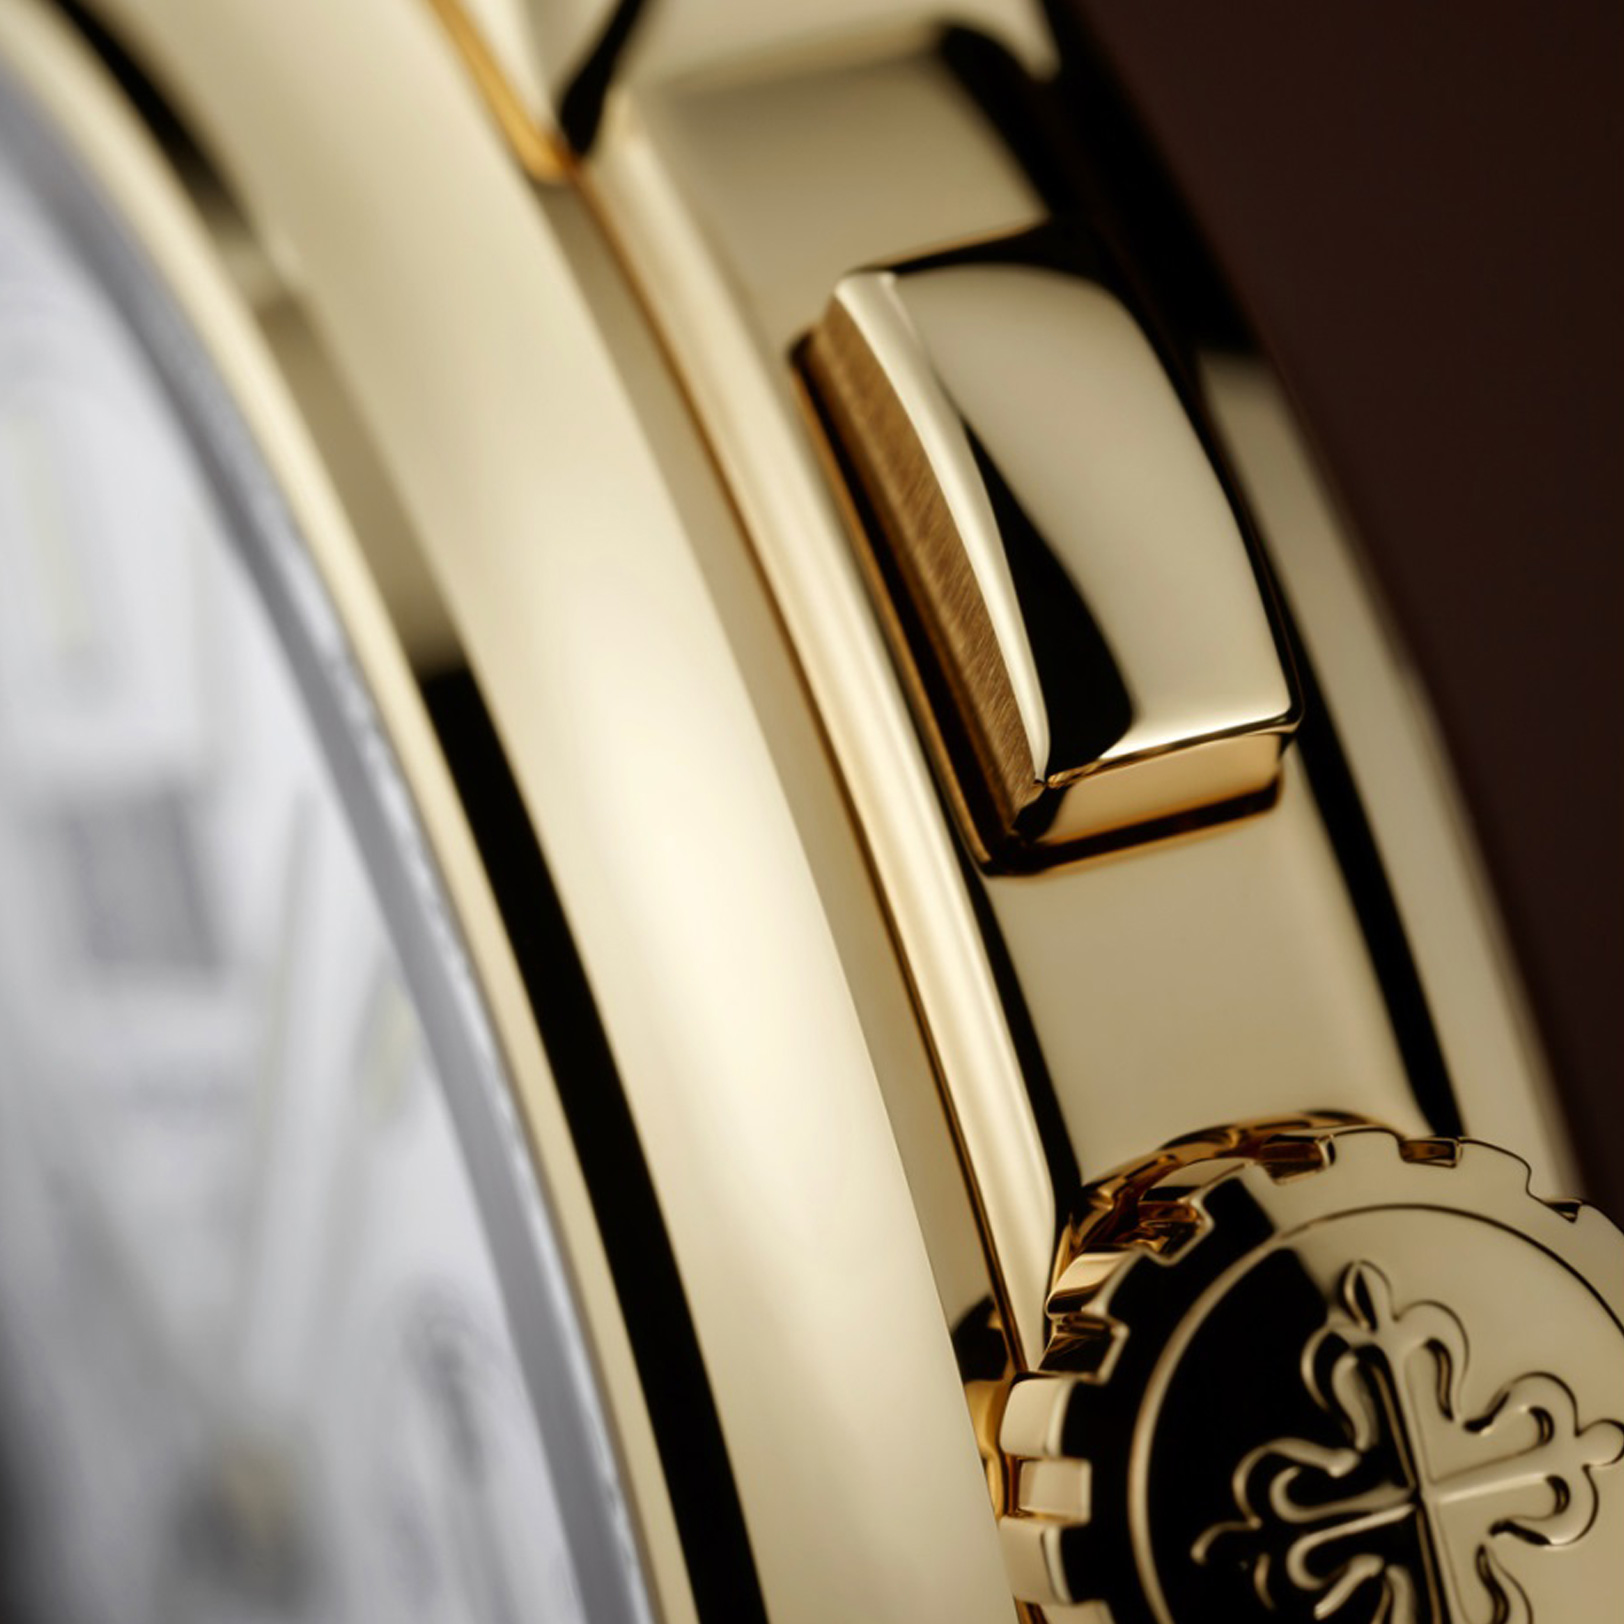 นาฬิกาปาเต็ก ฟิลิปป์ GRAND COMPLICATIONS PERPETUAL CALENDAR CHRONOGRAPH YELLOW GOLD gallery 8